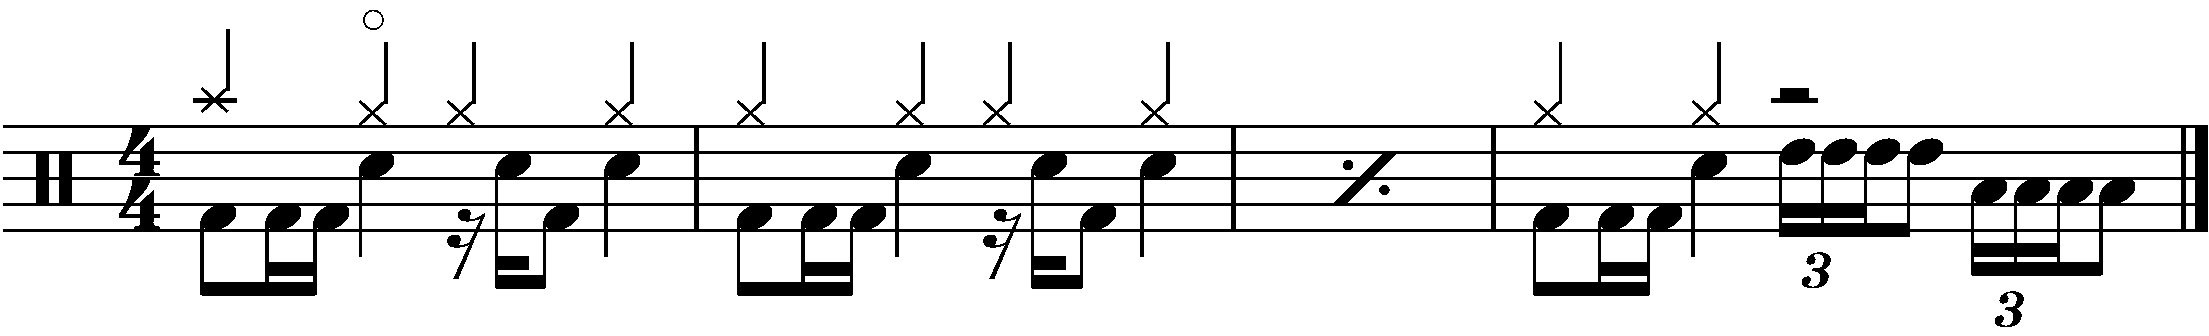 A four bar phrased using a half bar four stroke roll fill